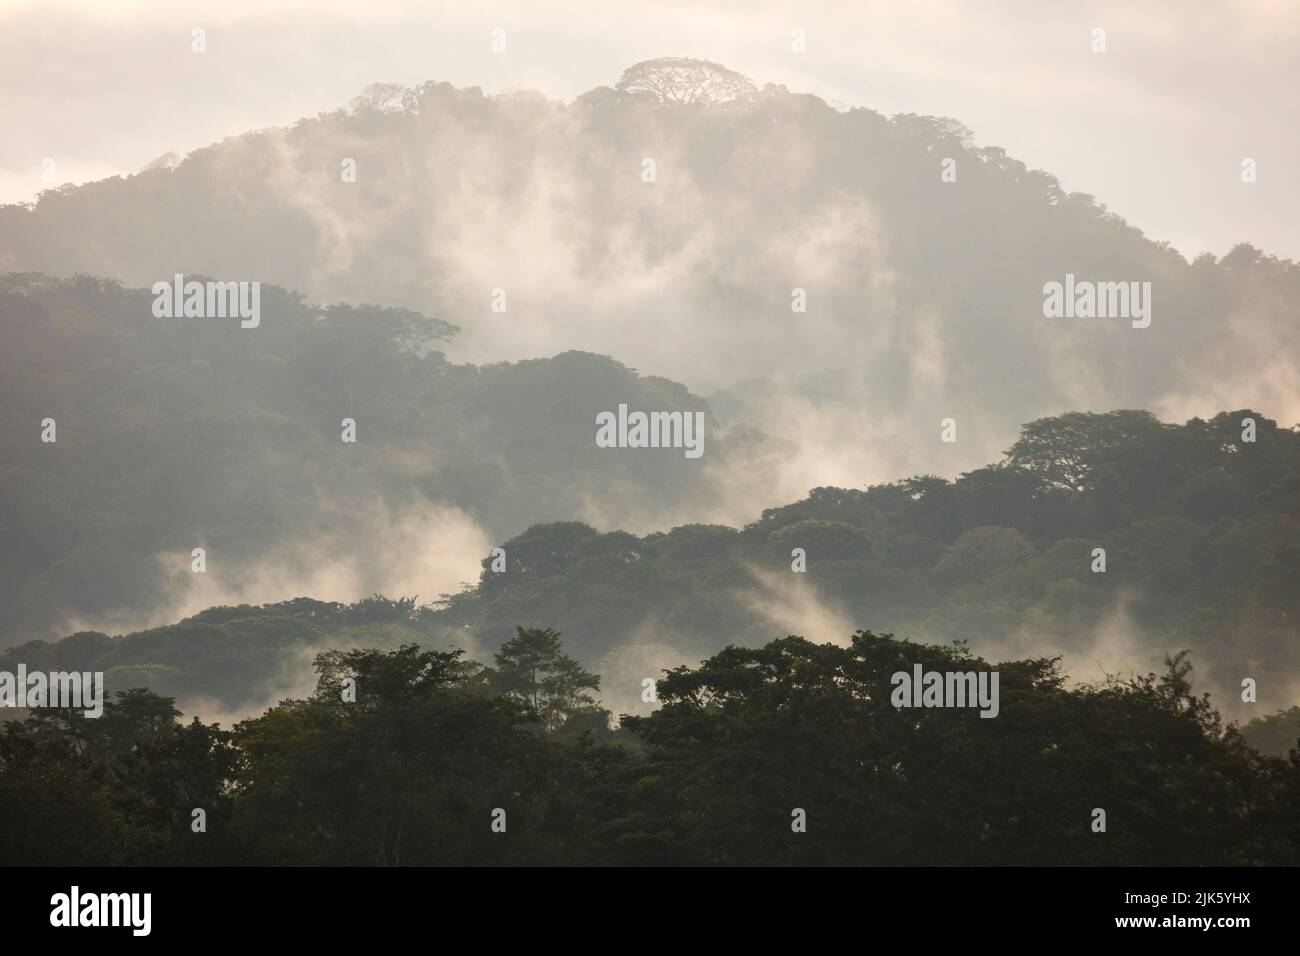 Paesaggio di Panama con foresta pluviale umida e misteriosa all'alba nel parco nazionale di Soberania, Repubblica di Panama, America Centrale. Foto Stock